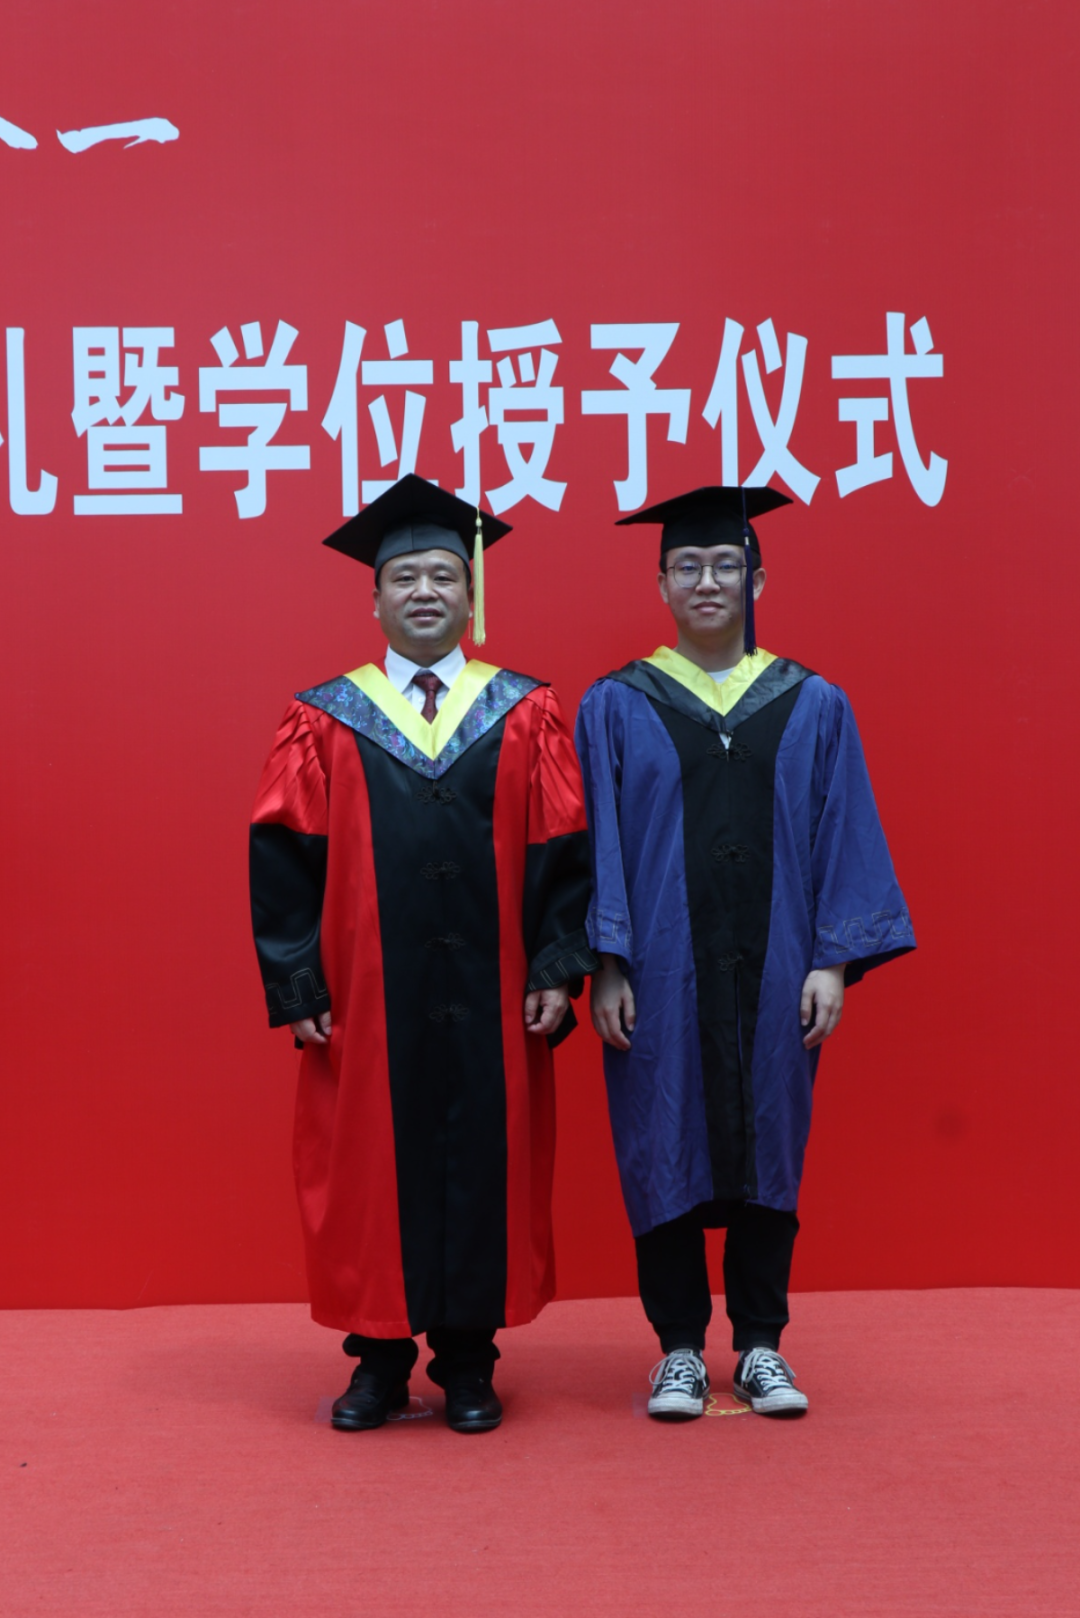 南昌航空大学2024年硕士研究生毕业典礼暨学位授予仪式隆重举行